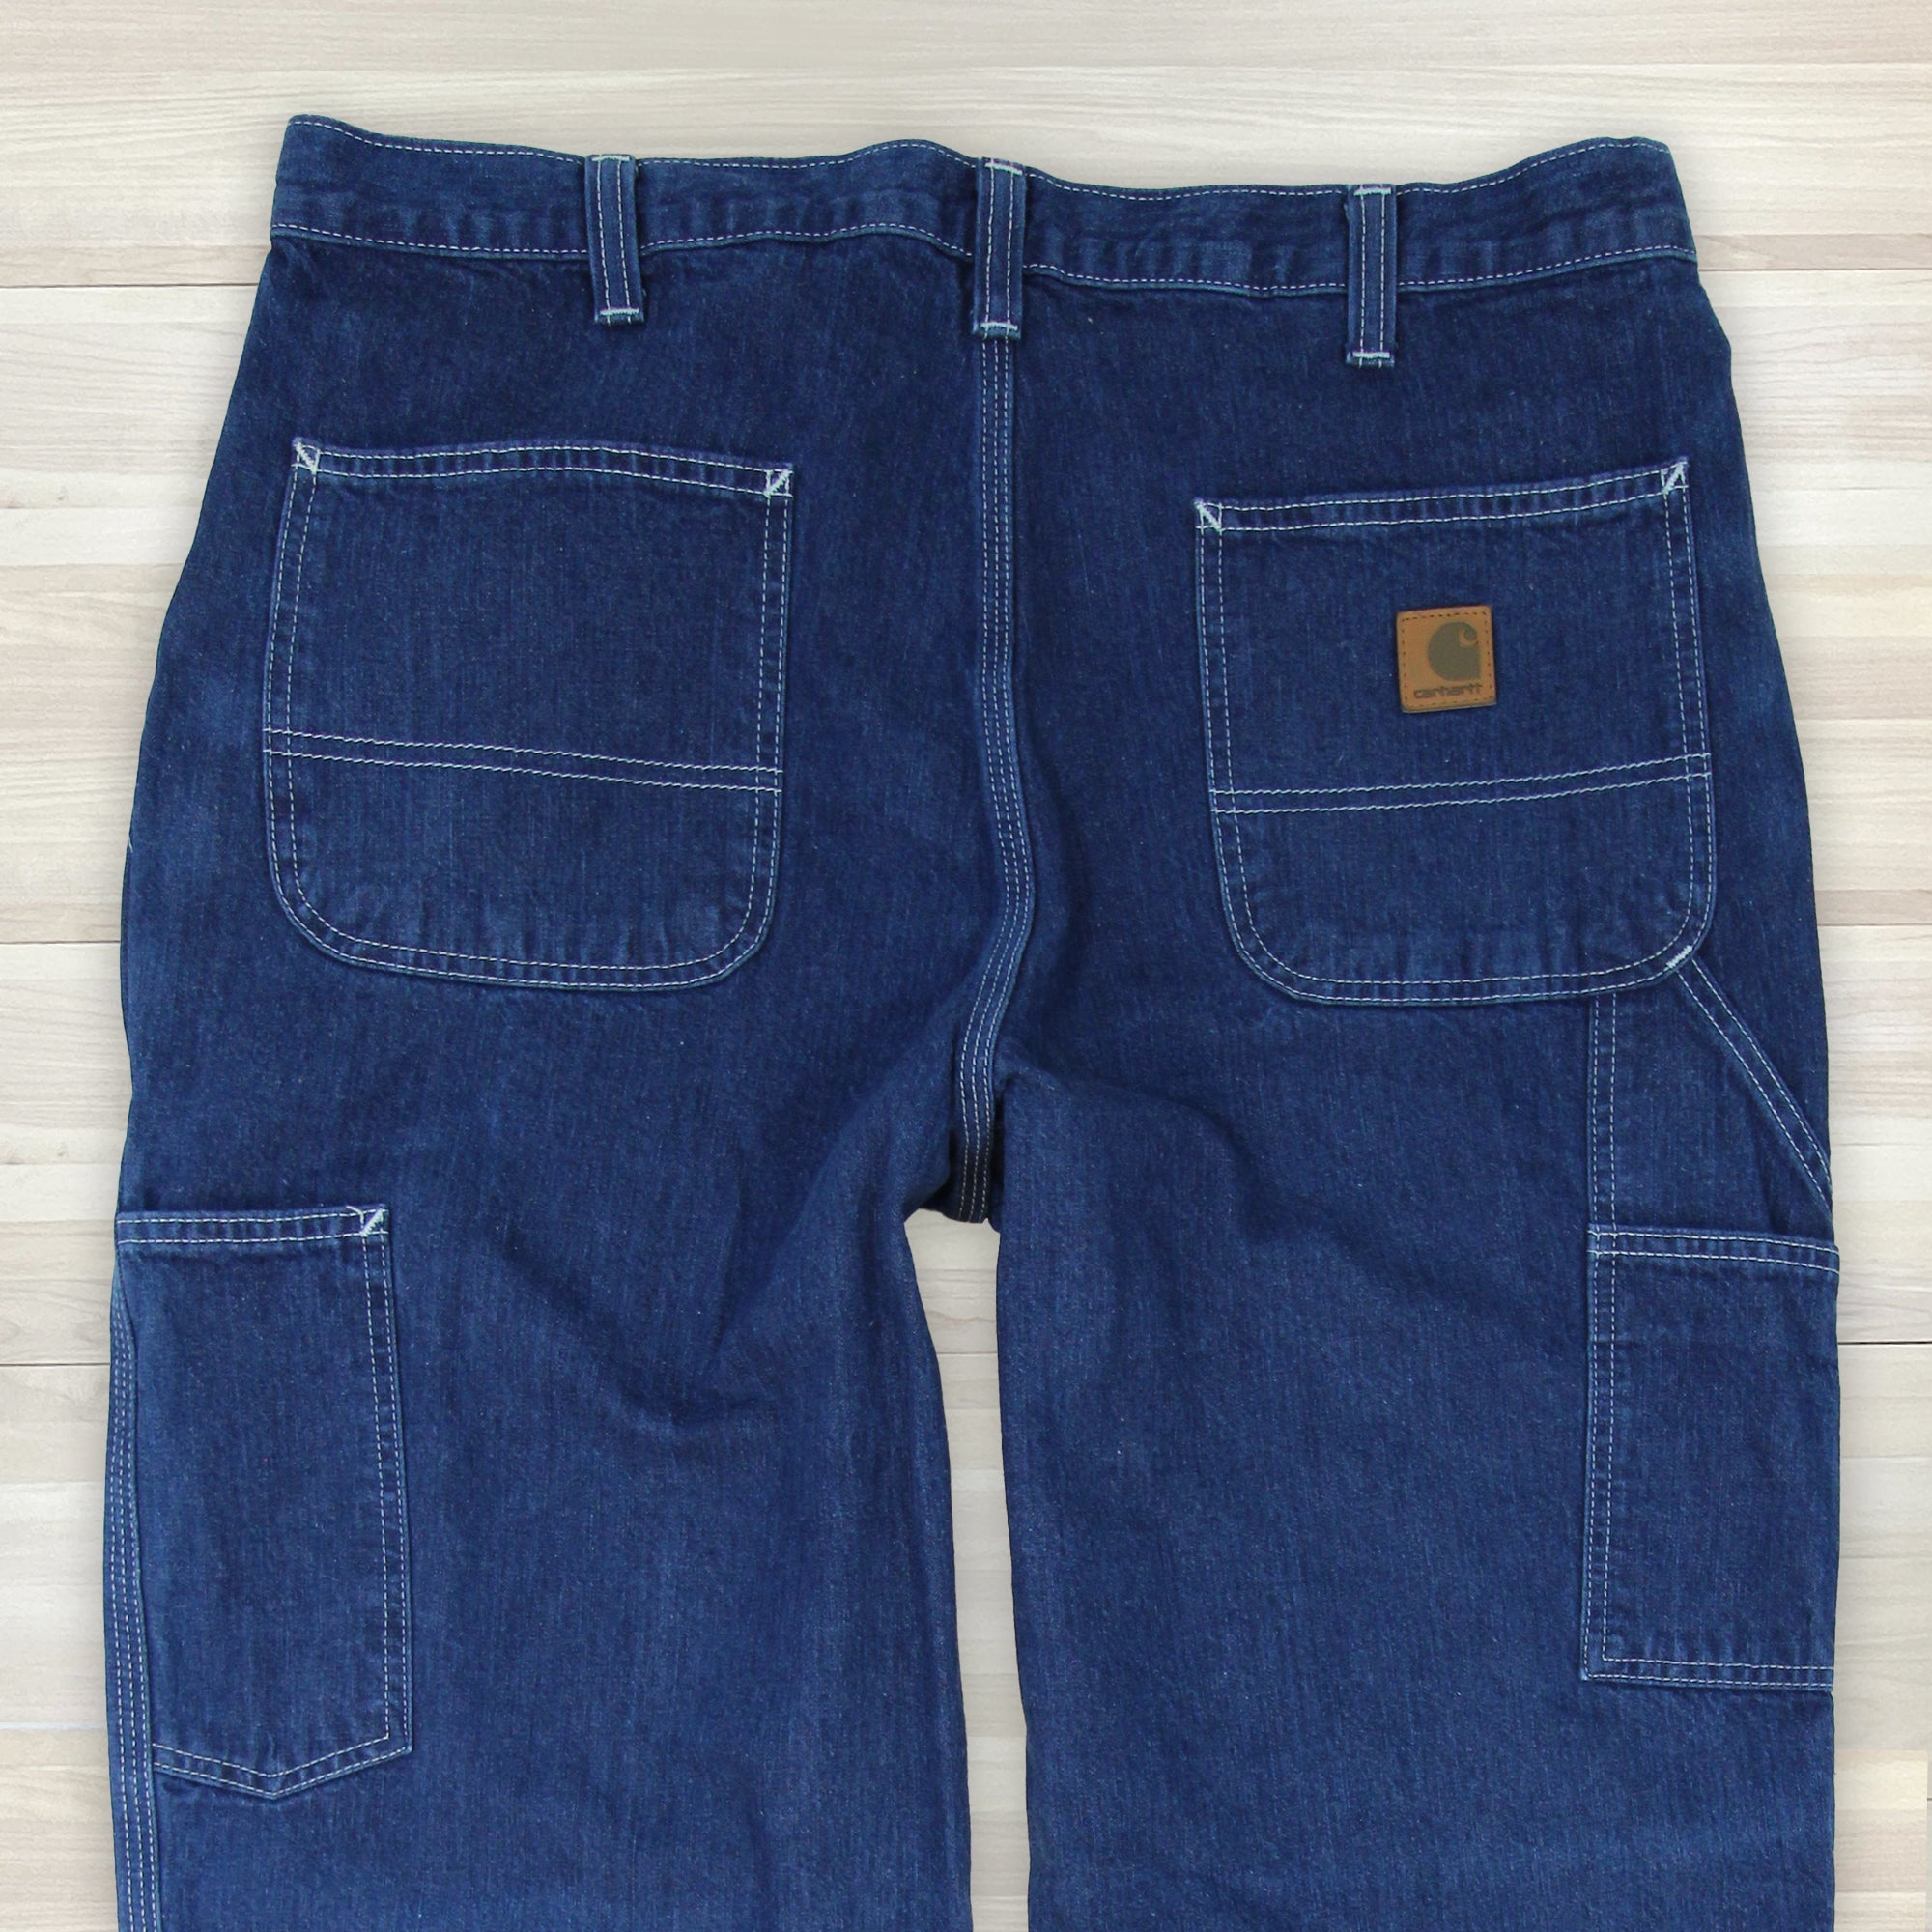 Men's Carhartt Dungaree Fit Carpenter Work Jeans - 36x30 Great Lakes Reclaimed Denim